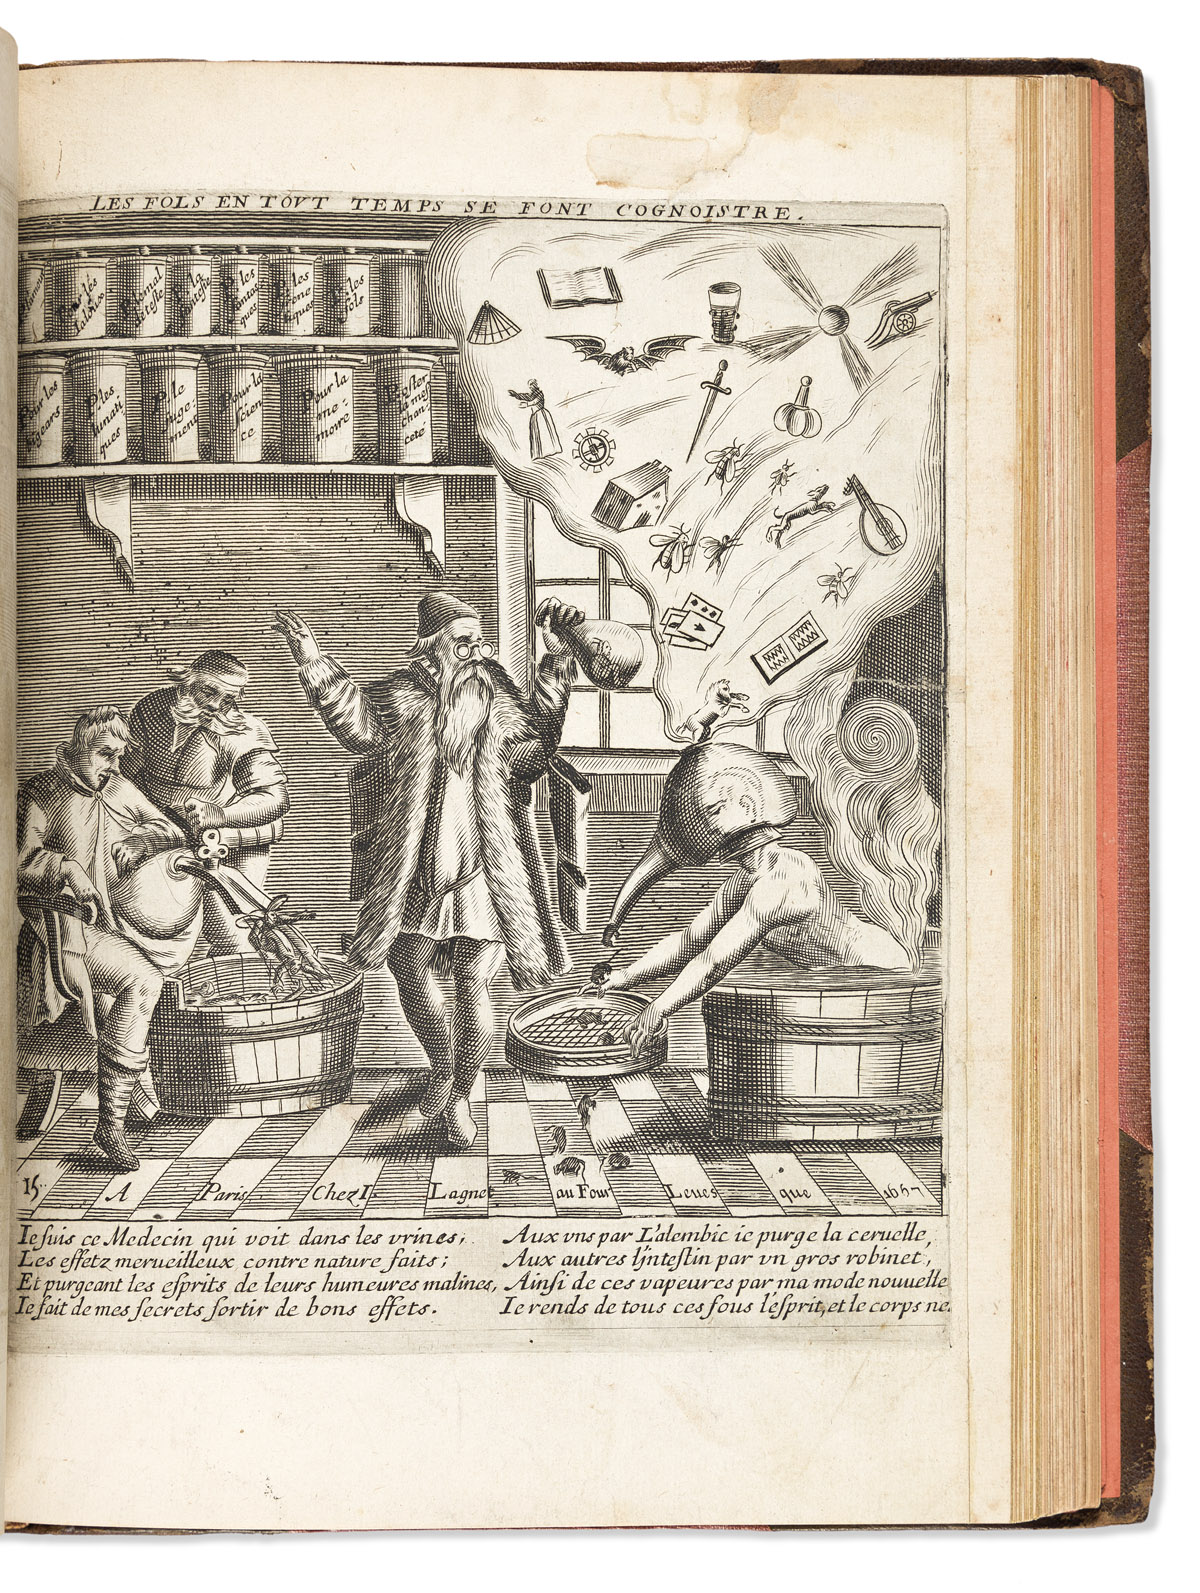 Lagniet, Jacques (1620-1672) Recueil des Plus Illustres Proverbes, Divisés en Trois Livres.